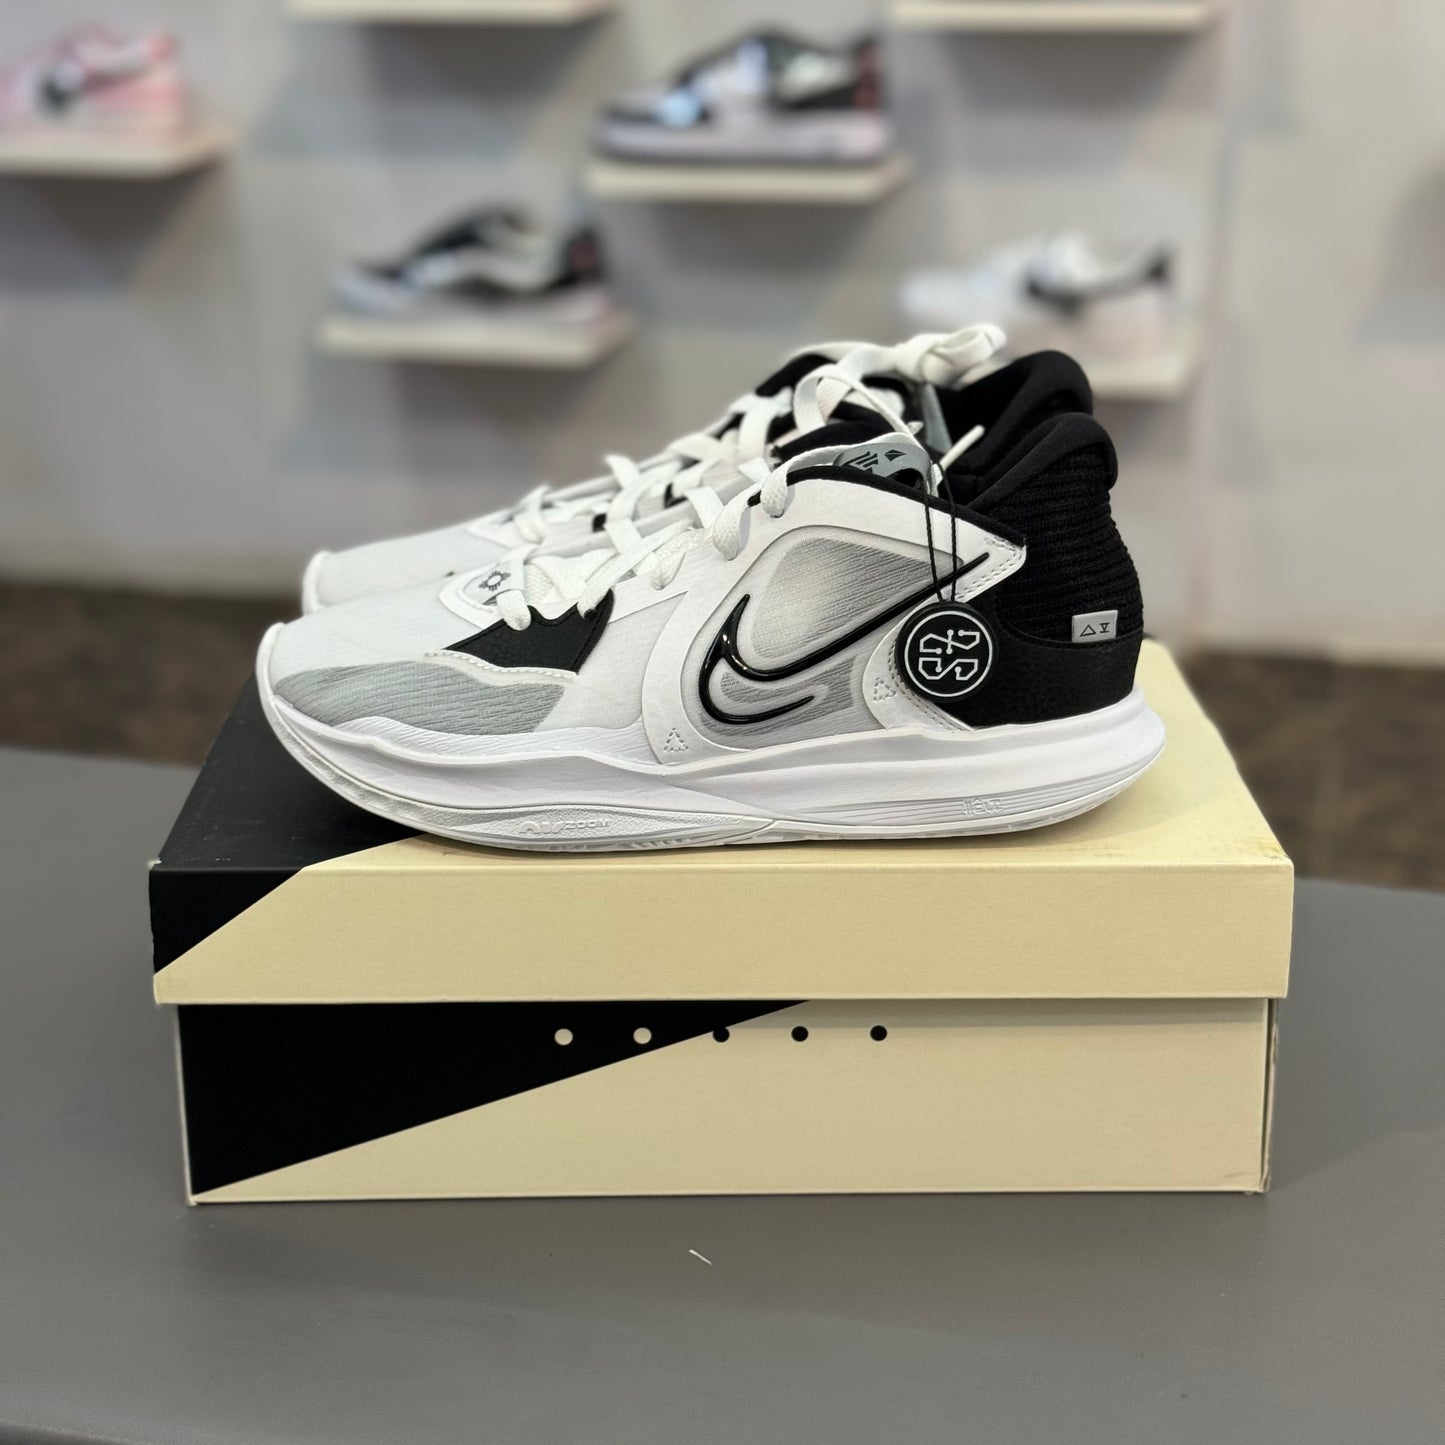 Nike Kyrie 5 Low White Wolf Grey Black